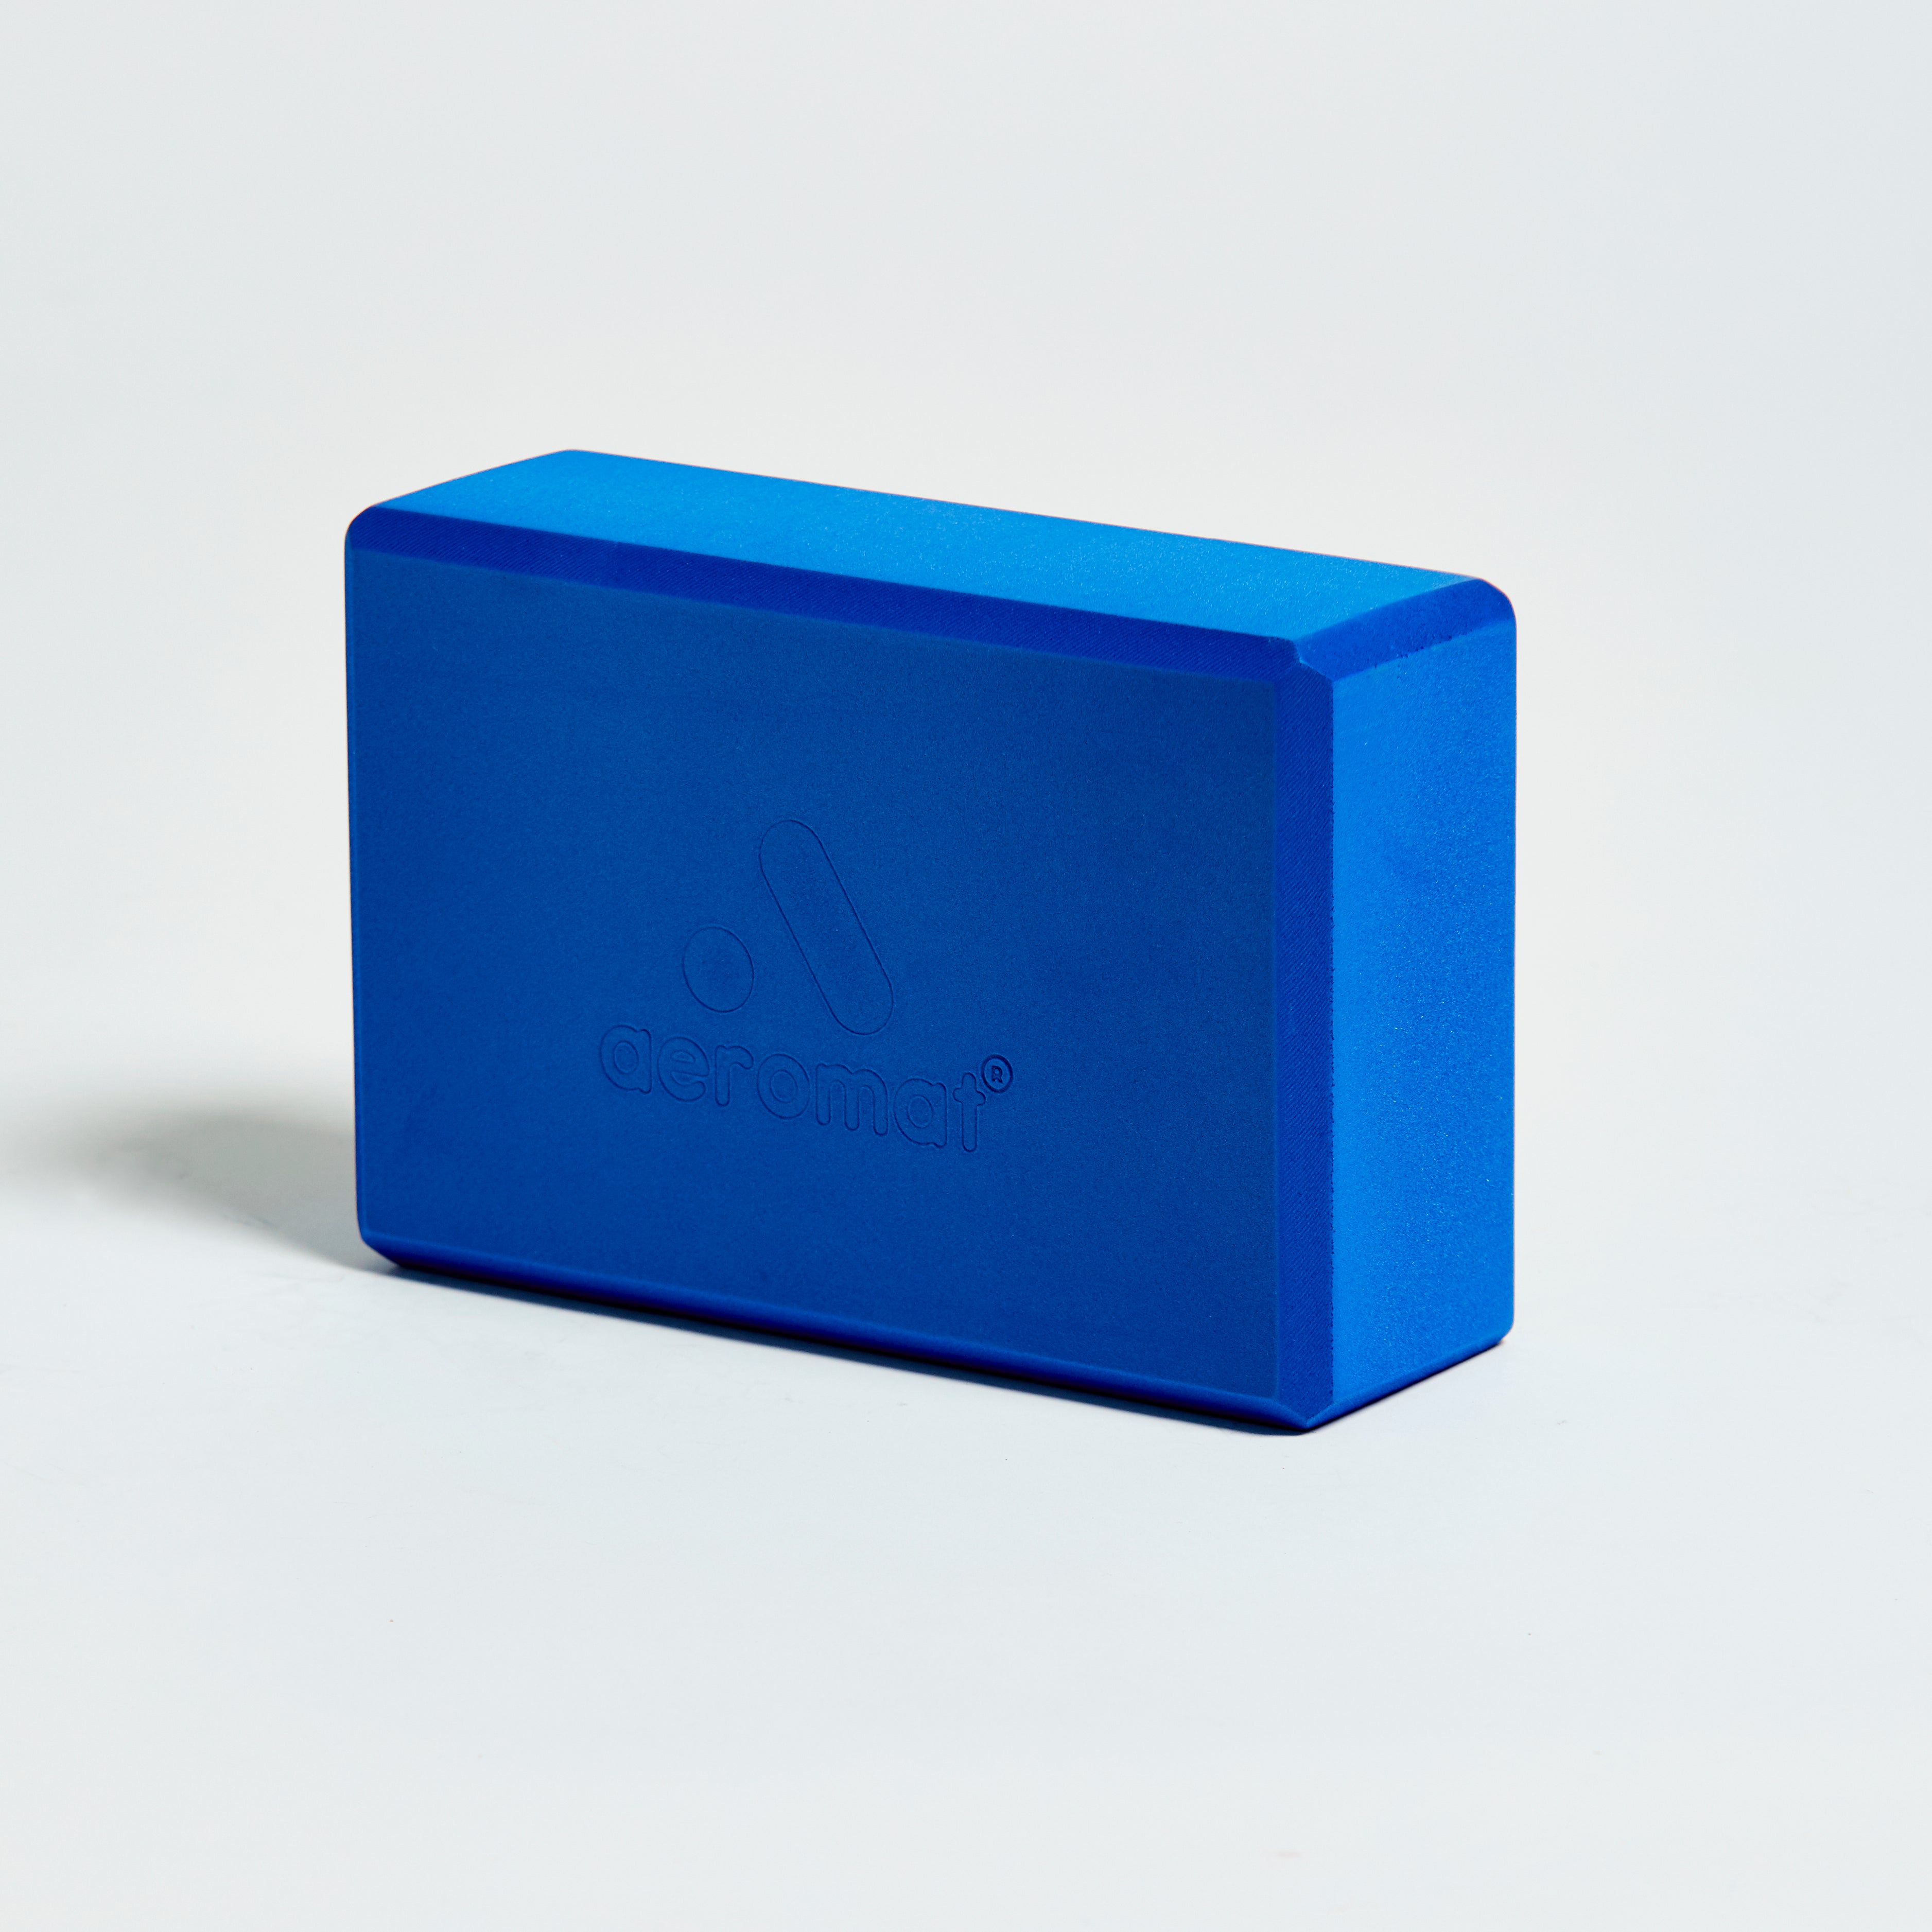 Foam Yoga Block - Blue